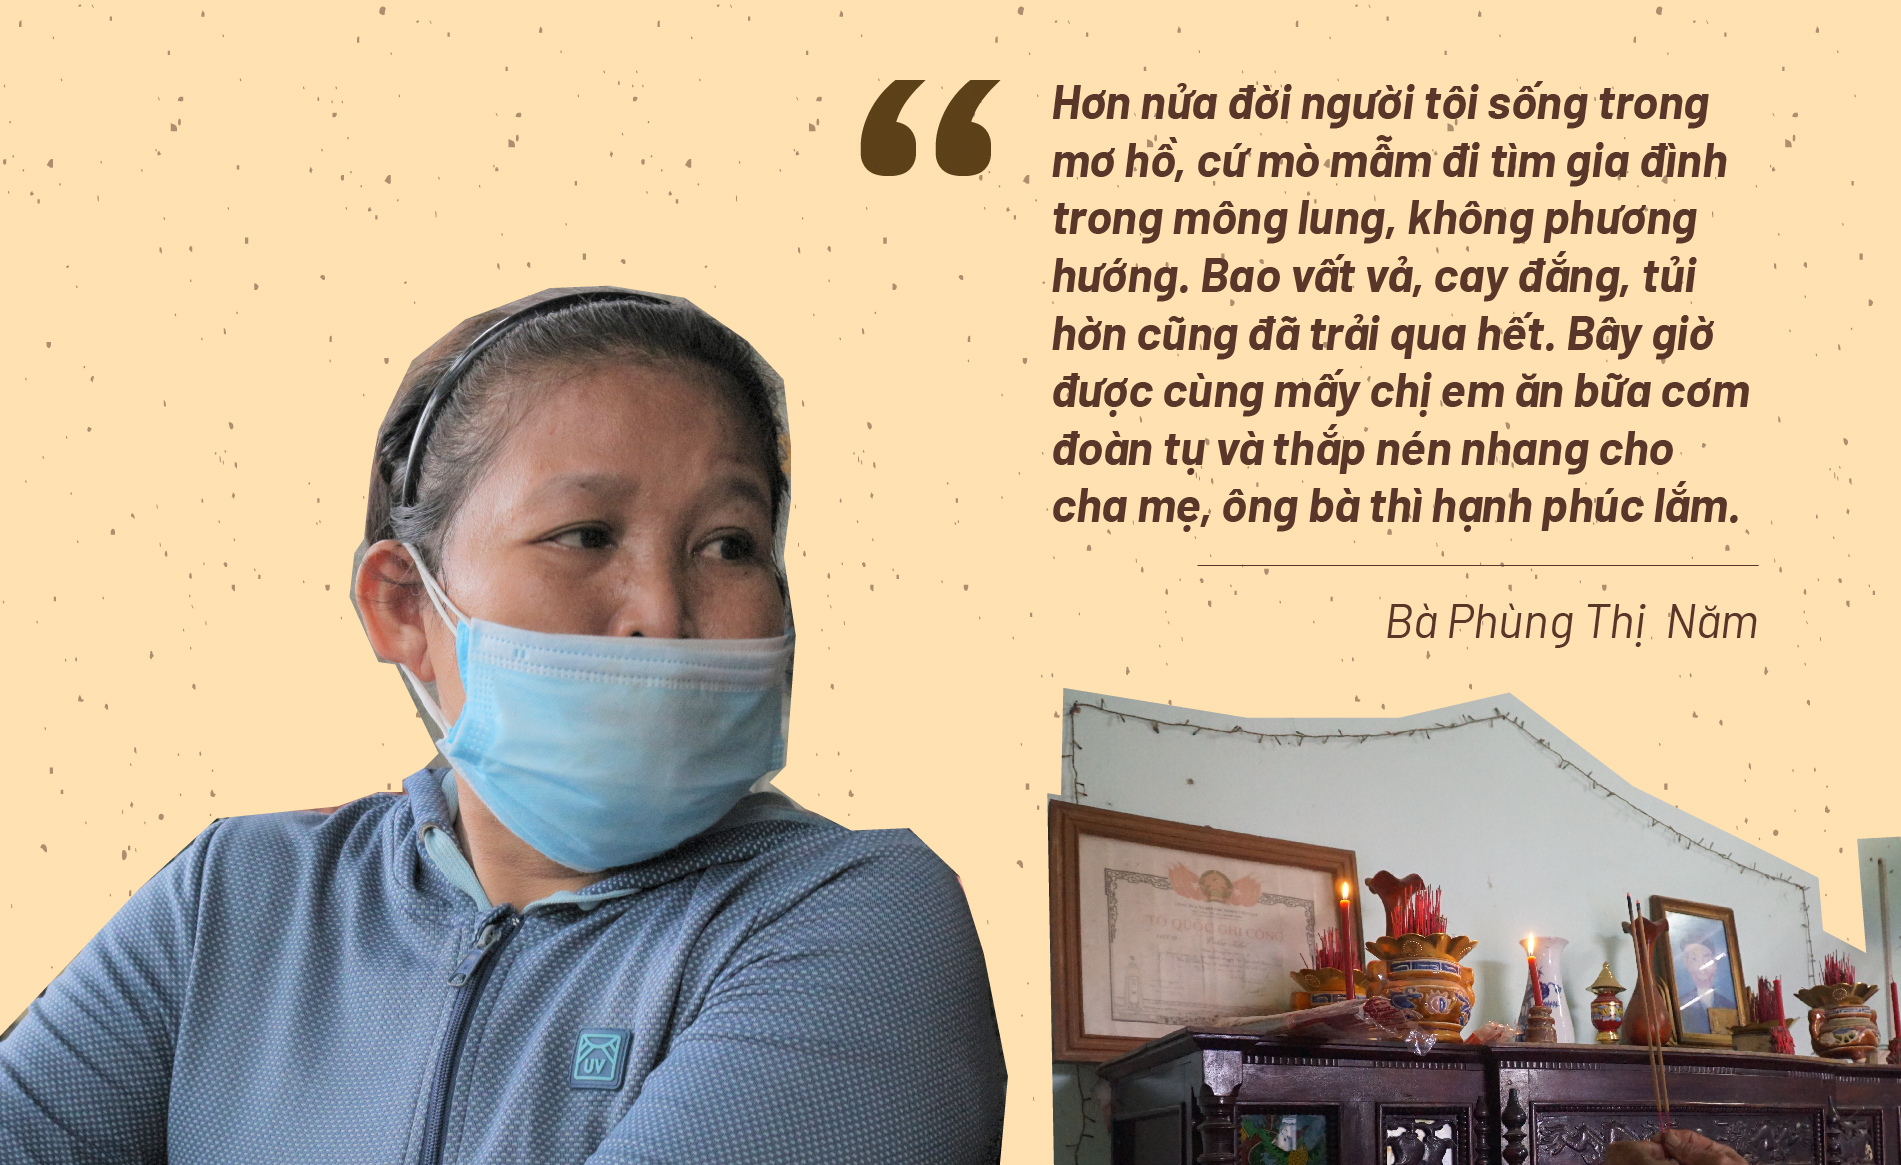 Hành trình gần 50 năm đi tìm em gái sau chiến tranh ở Quảng Nam - ảnh 3